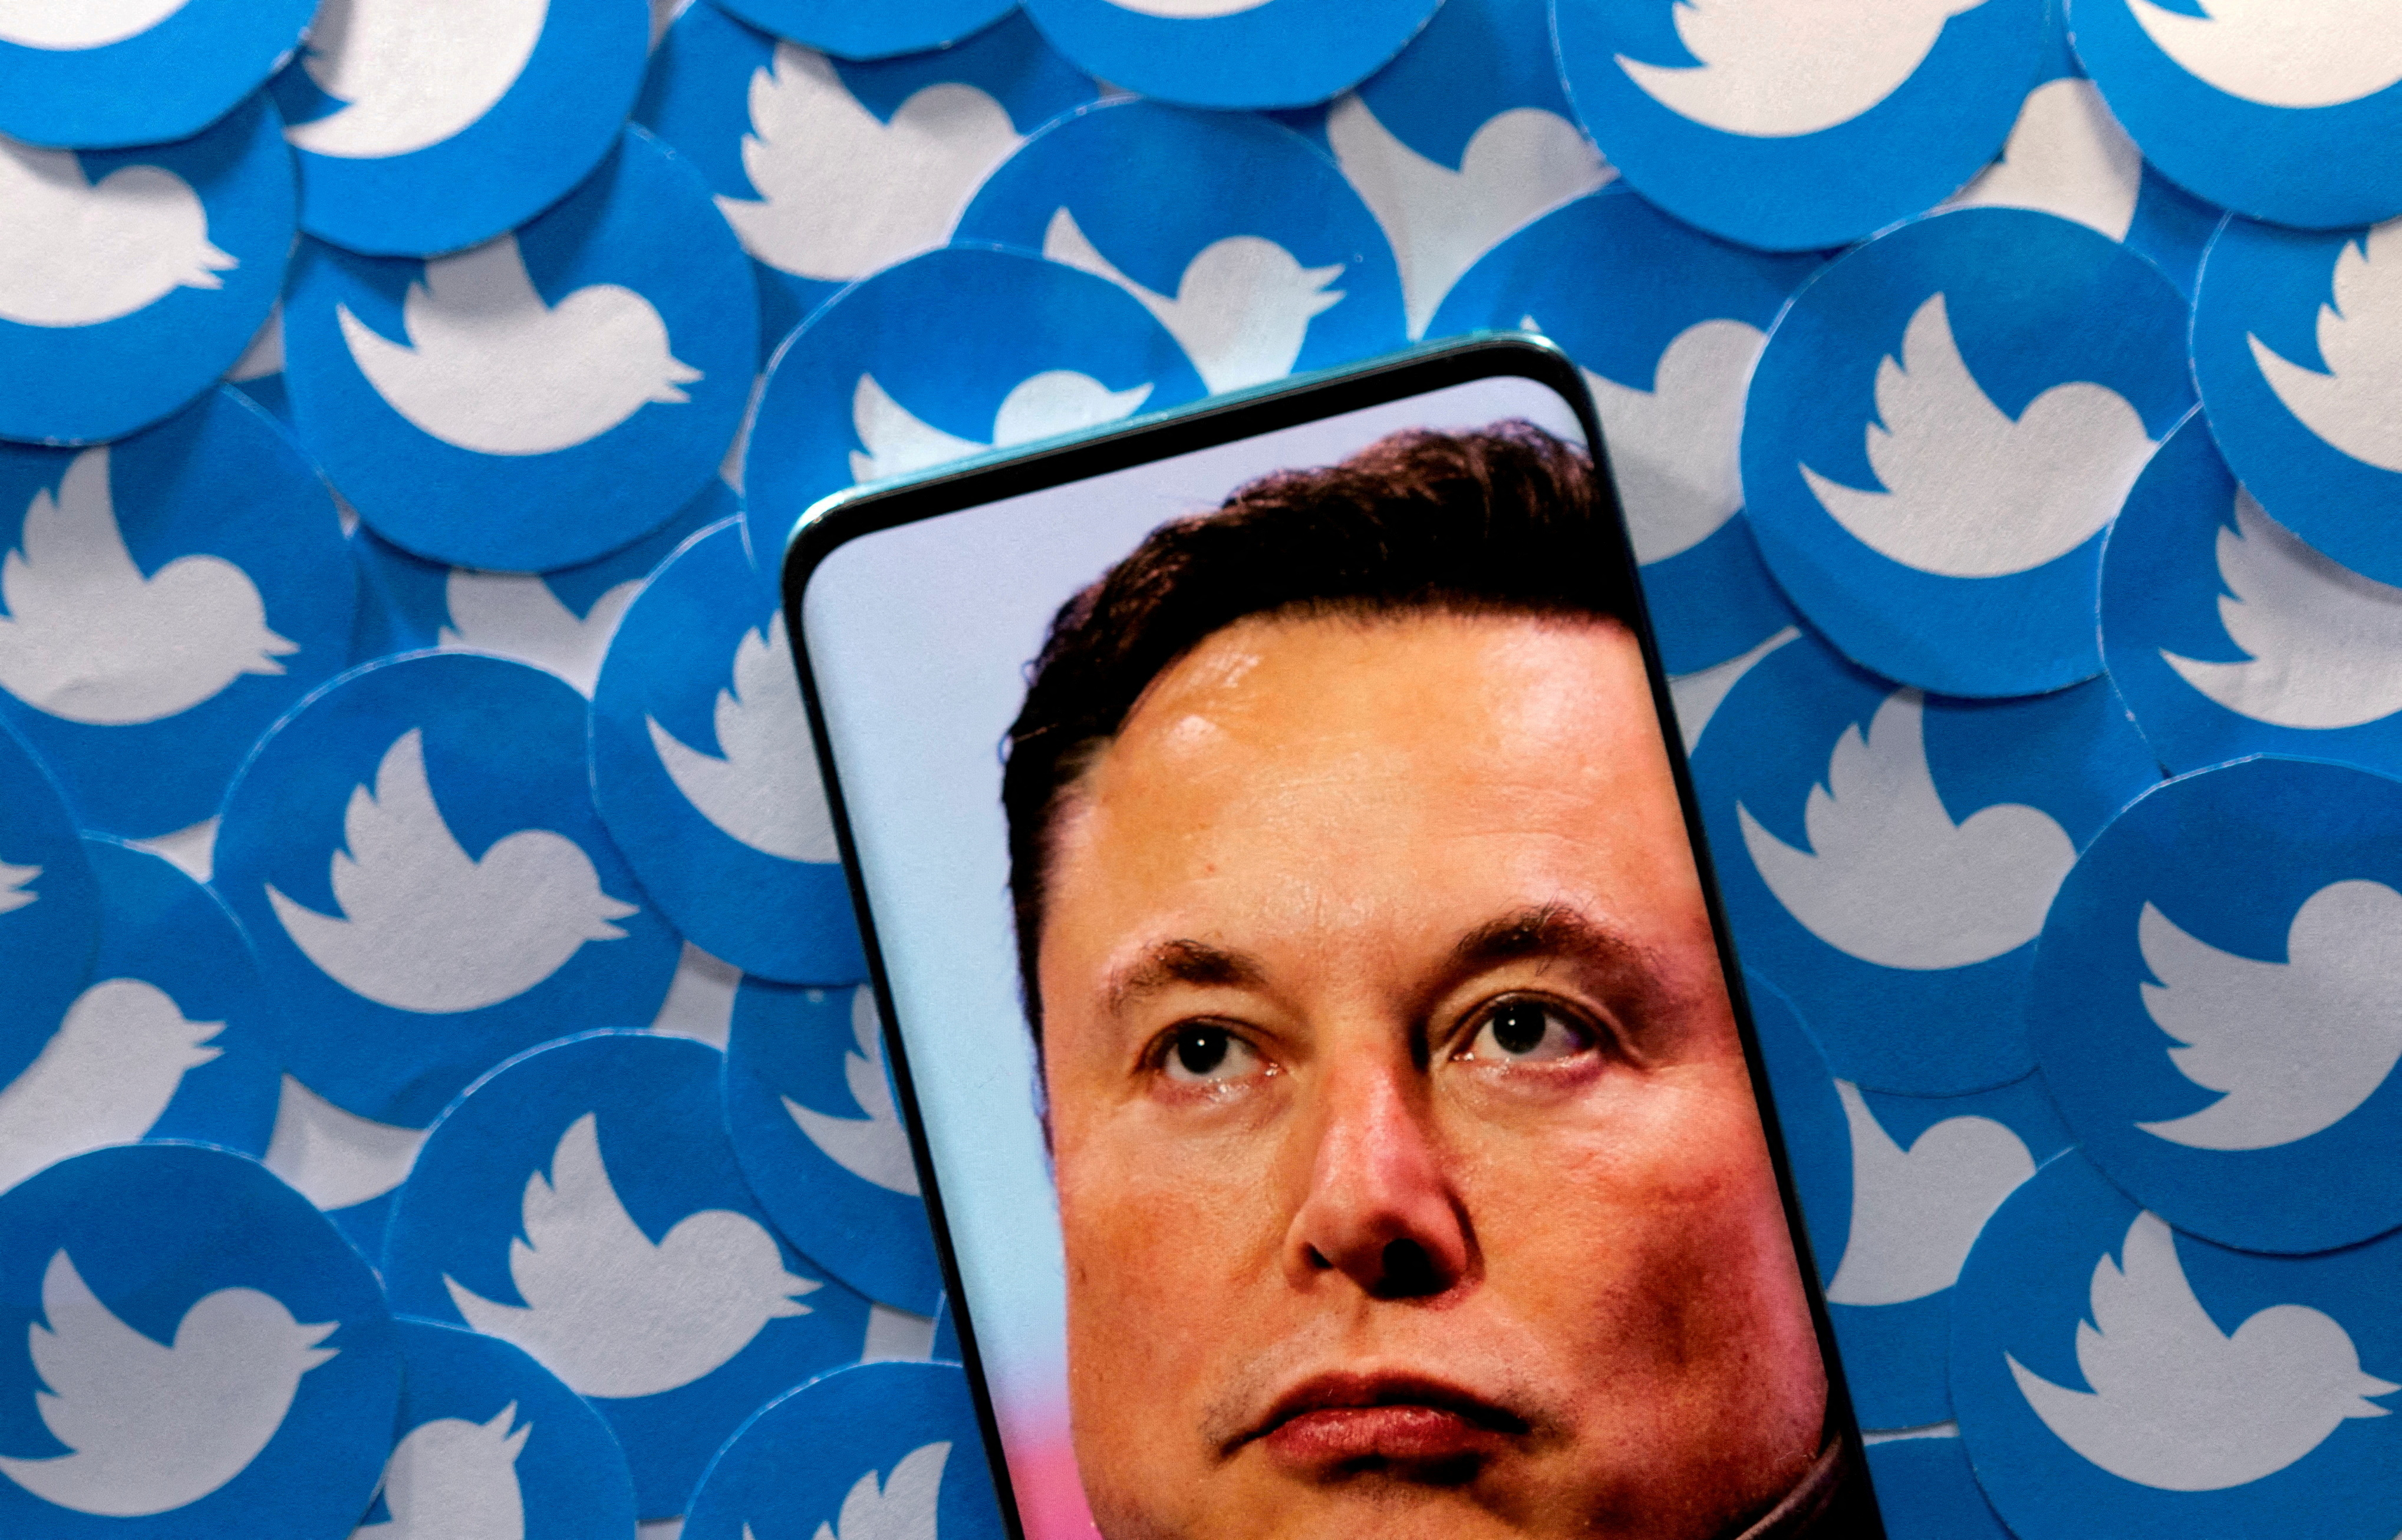 Continúan los cambios en Twitter tras la llegada de Elon Musk. (REUTERS/Dado Ruvic)